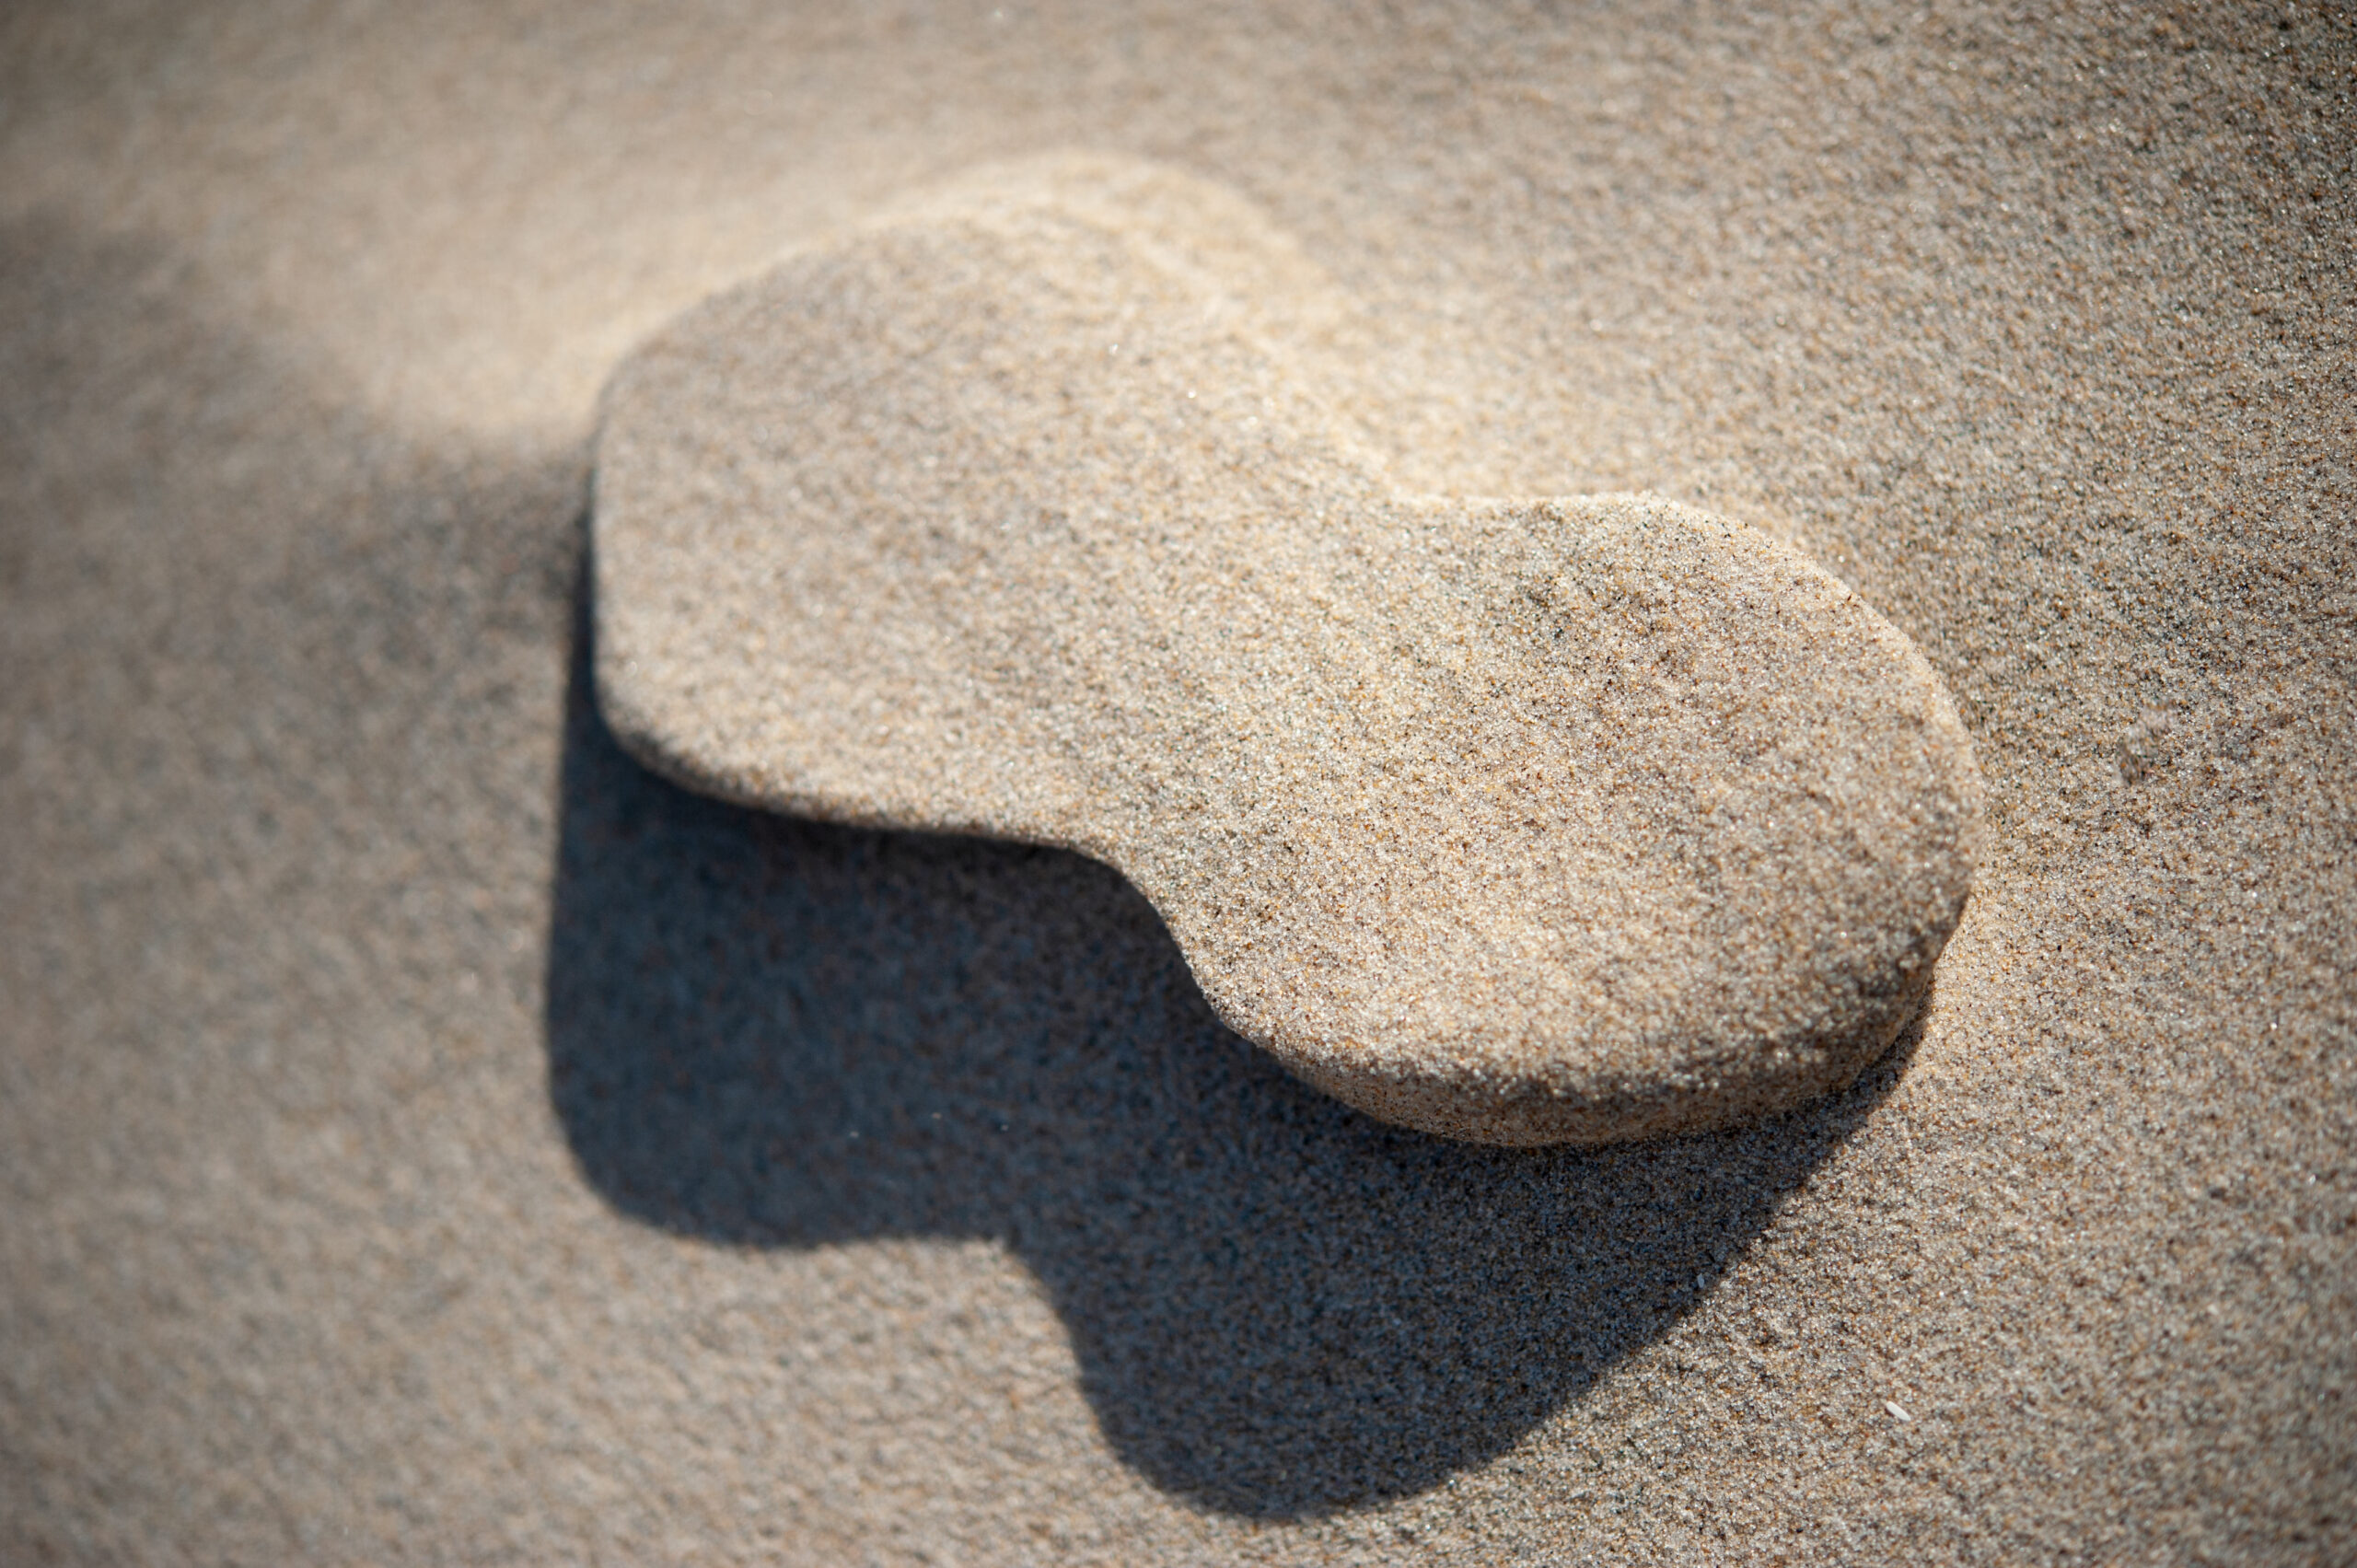 Zand in de vorm van een acht maar dan met 'dichte gaten' waardoor het een mond lijkt